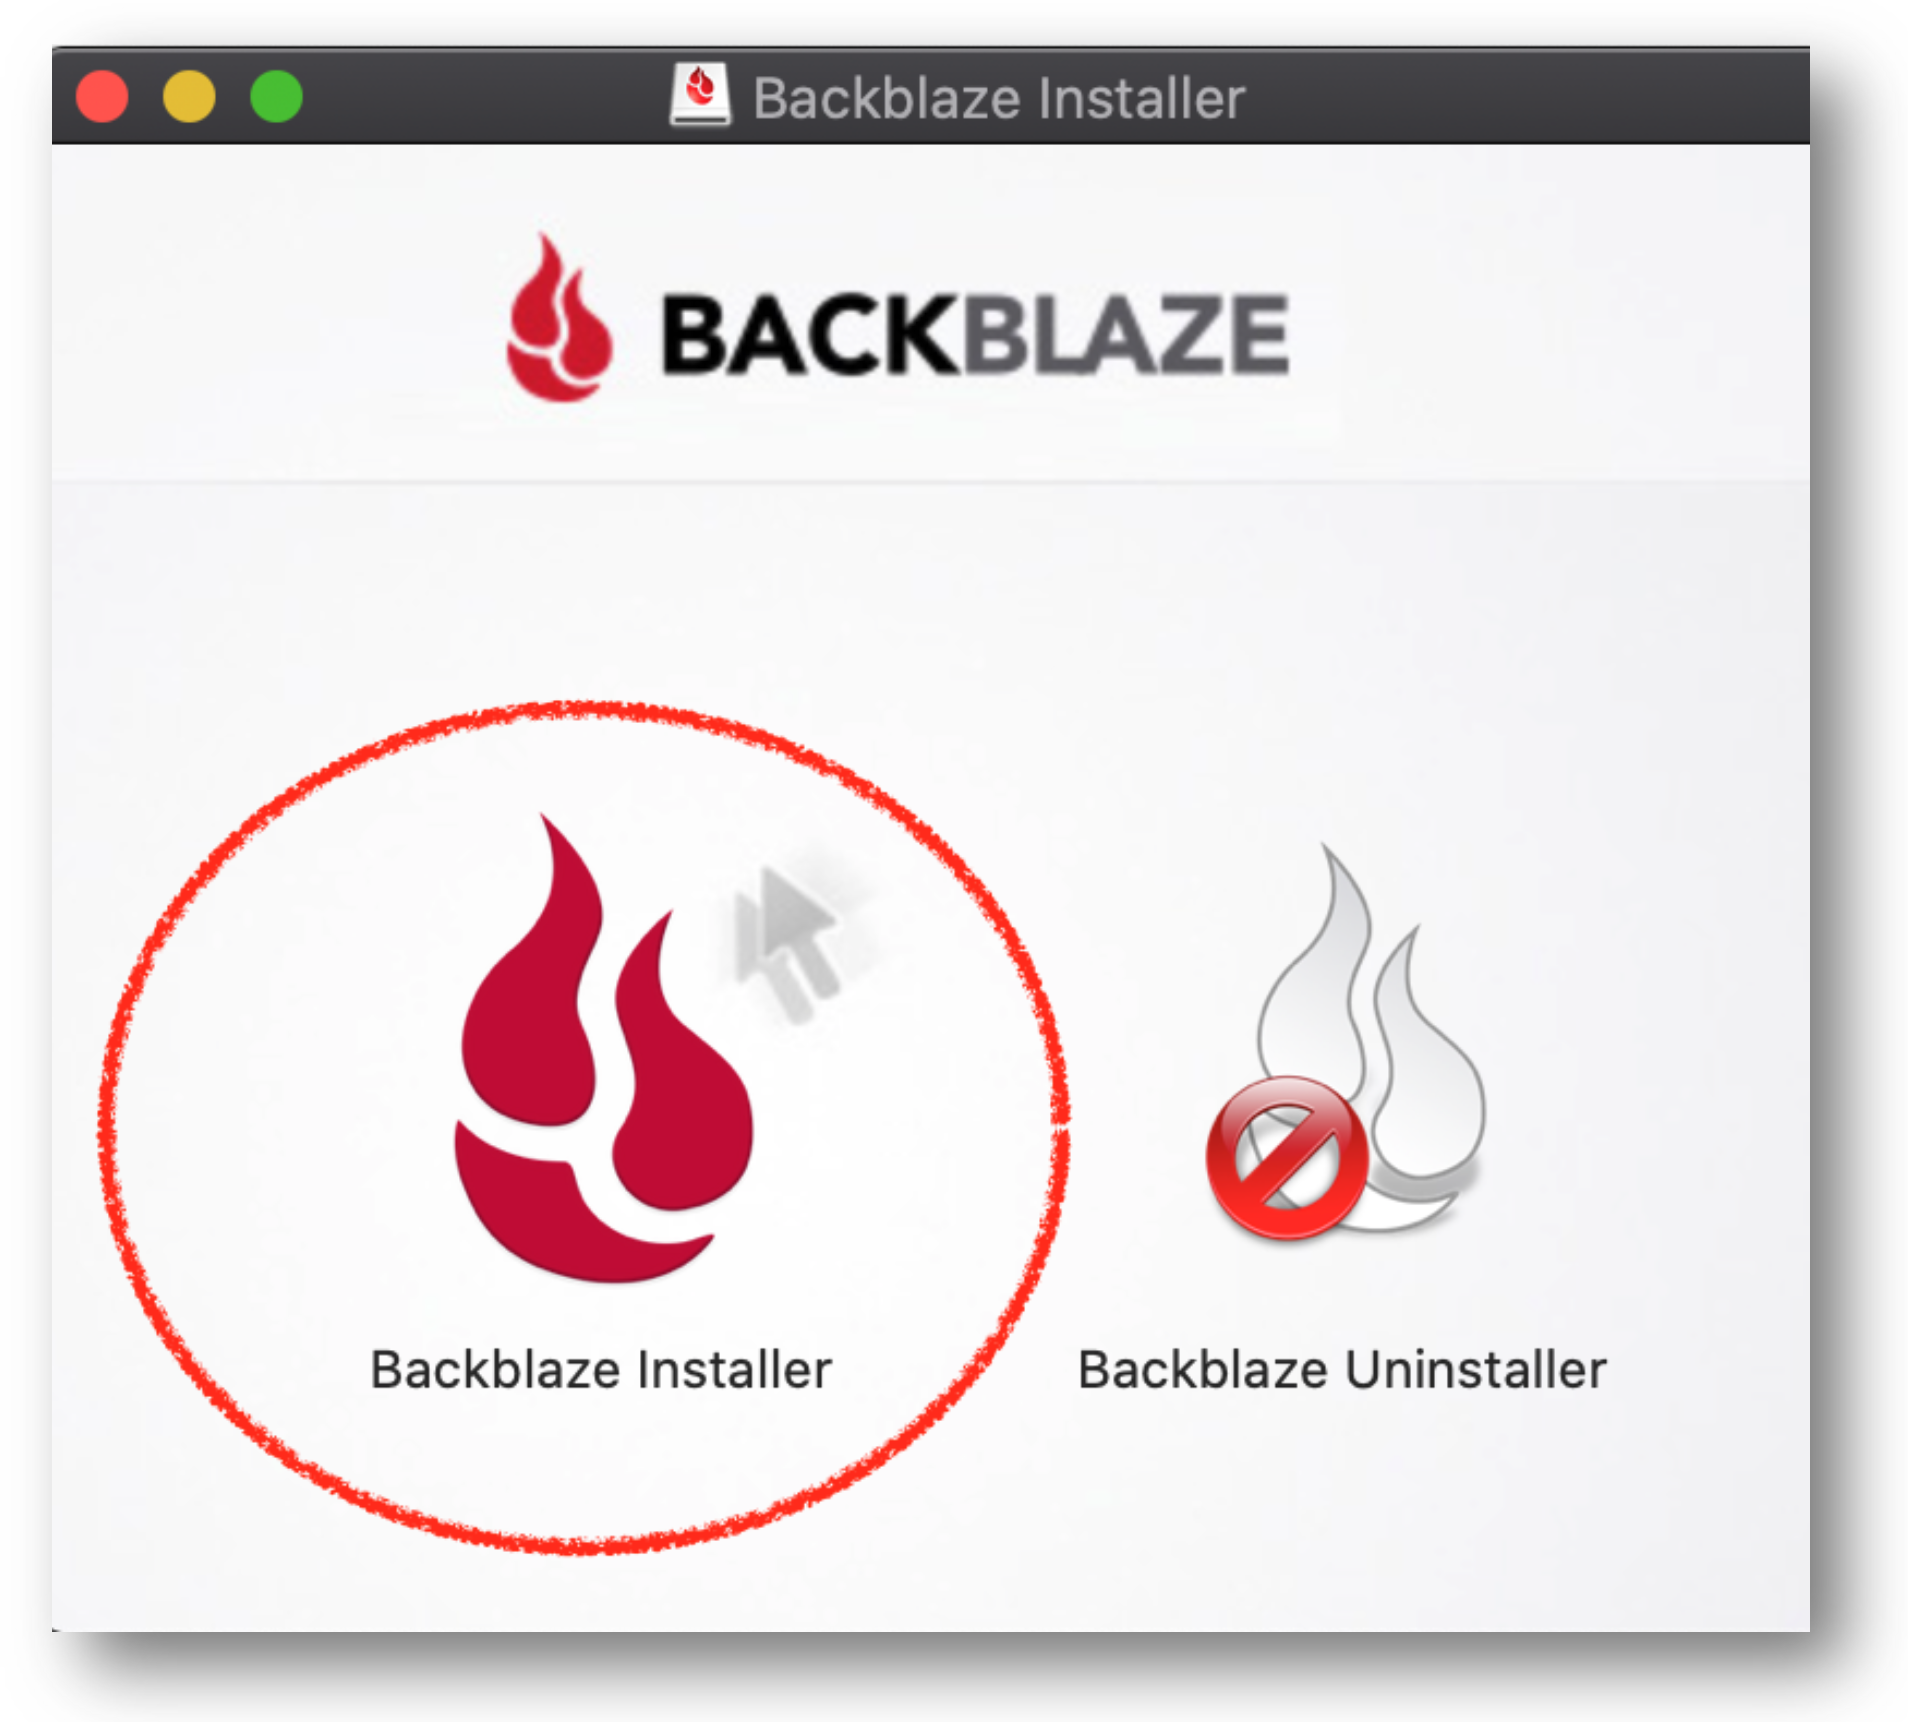 backblaze linux support